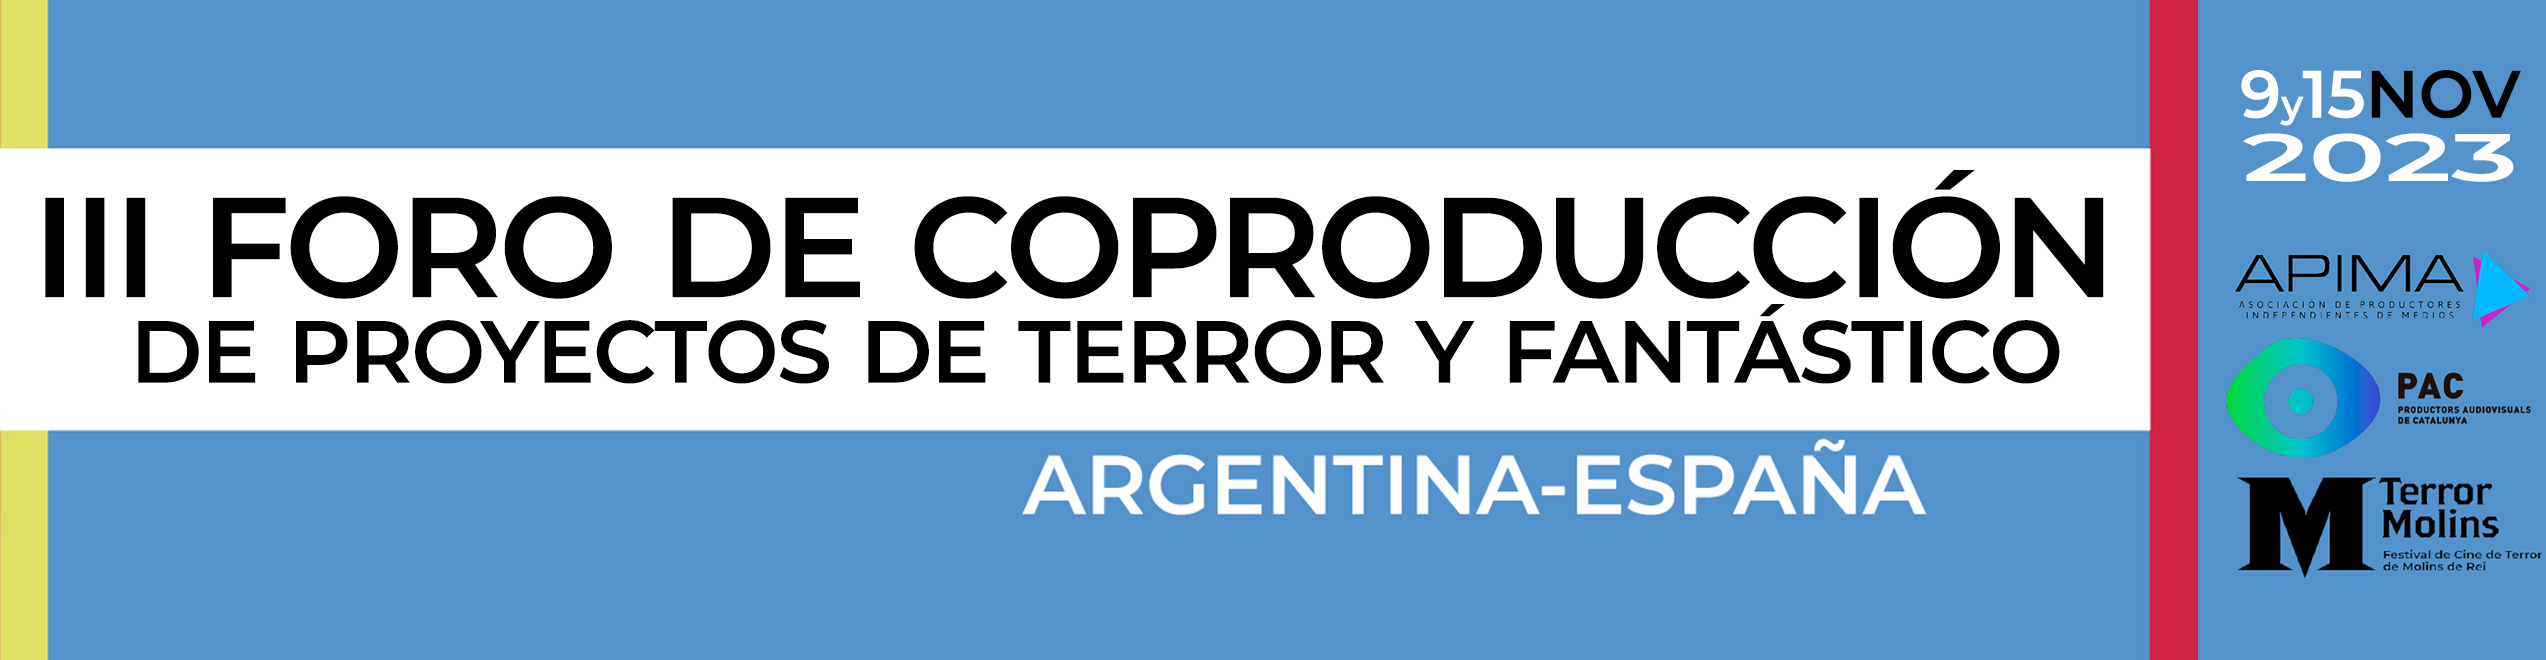 III Foro de Coproducción Argentina-España de Proyectos de Terror y Fantástico